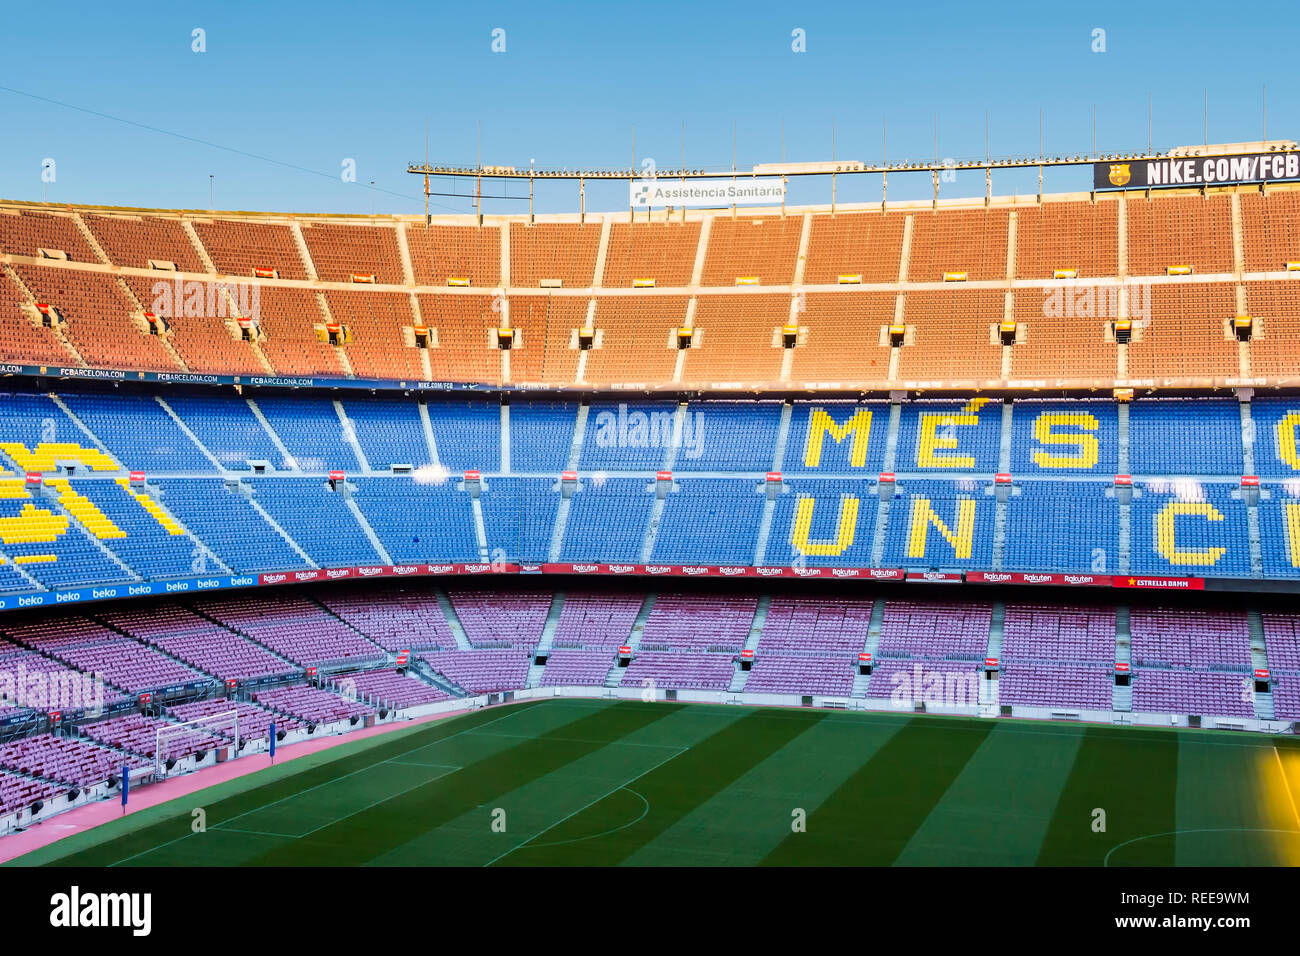 Barcelona - Dezember 2018: Im Camp Nou - home Stadion des FC Barcelona ist  das größte Stadion in Spanien und Europa Stockfotografie - Alamy